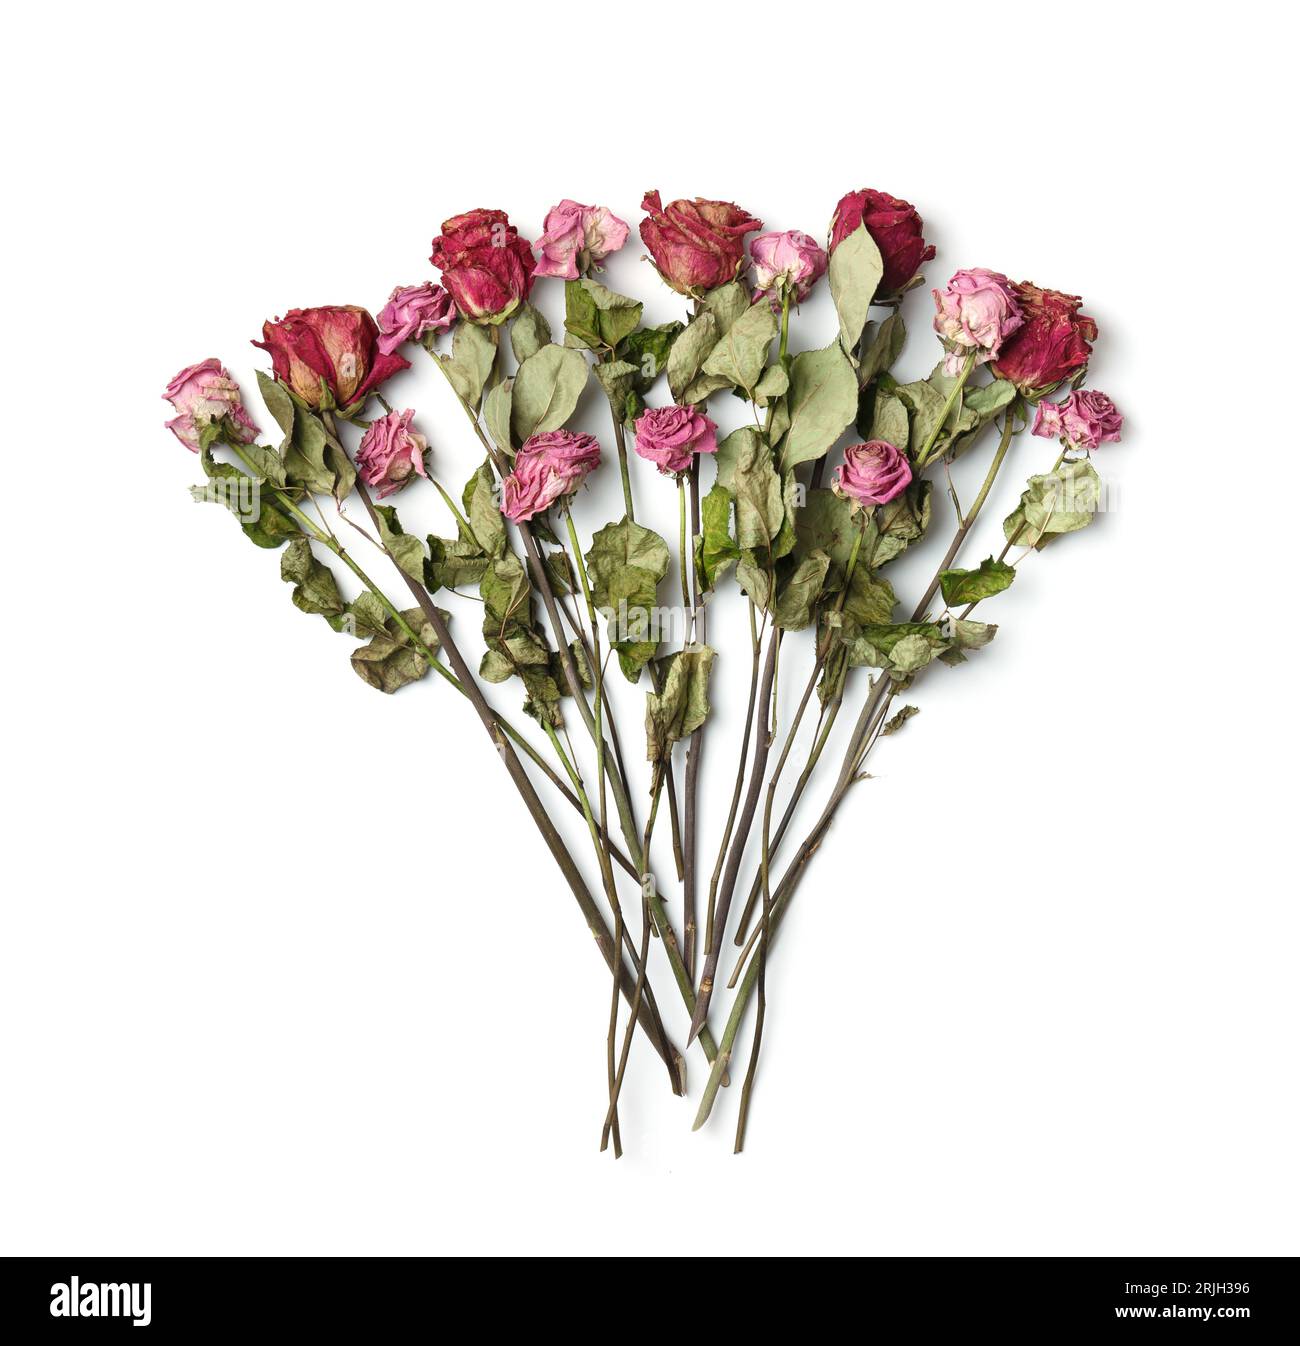 Rosas rosadas secas sobre un fondo blanco, vista superior, espacio de copia. Rosas muertas de cerca. El concepto de soledad, edad, tristeza, vejez, amor infeliz, pérdida. Foto de stock